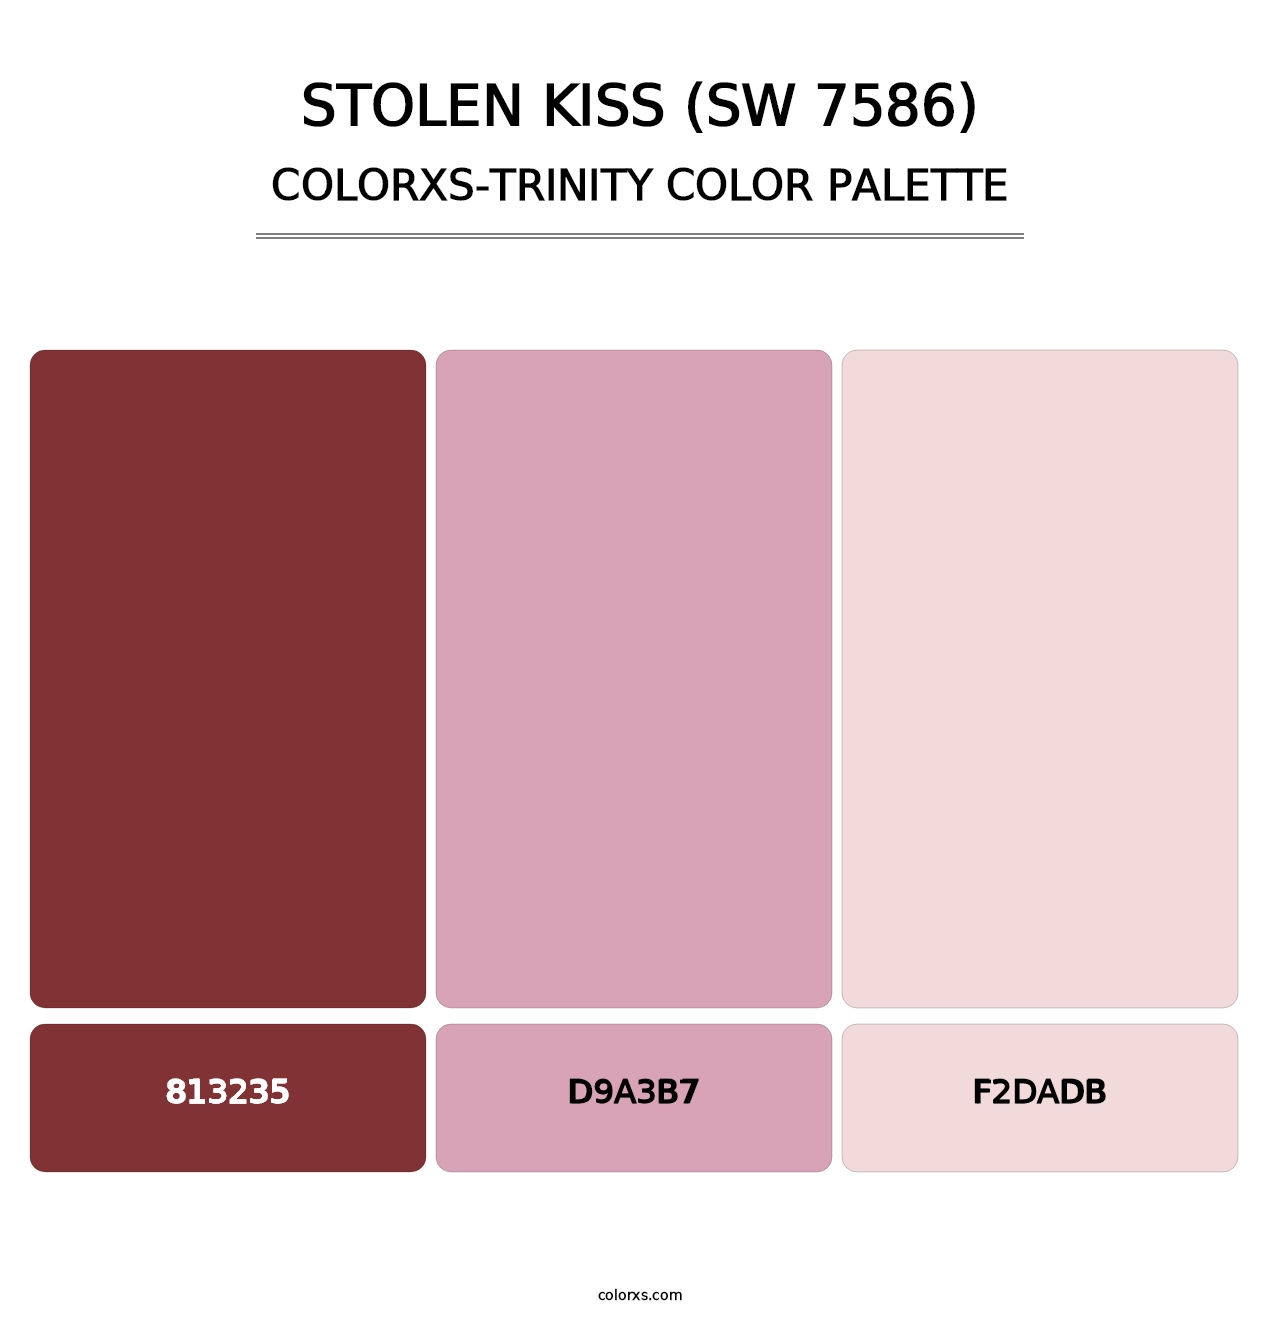 Stolen Kiss (SW 7586) - Colorxs Trinity Palette